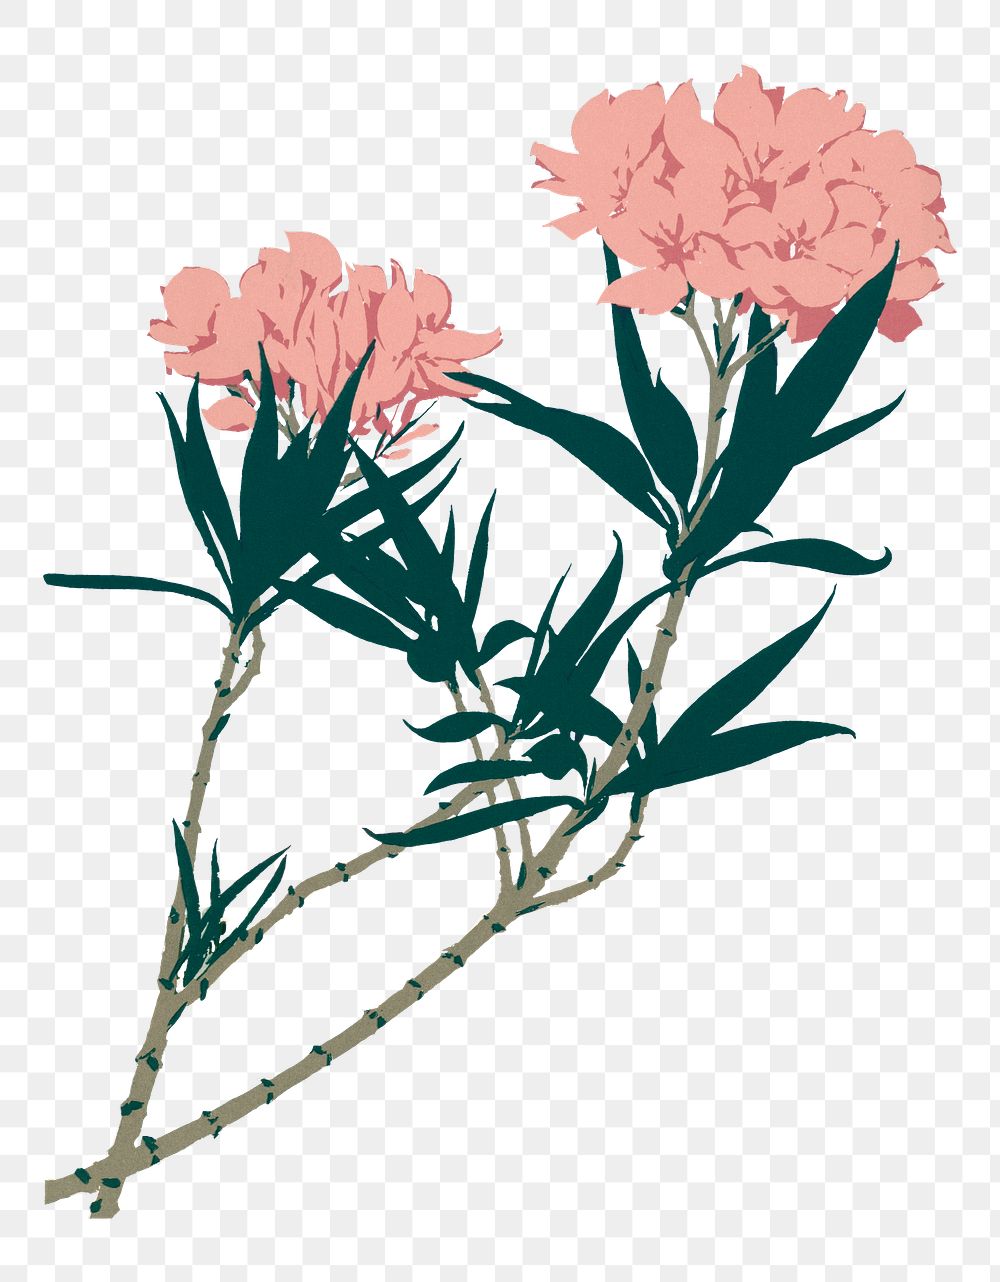 Pink vintage flower png illustration, transparent background. Remastered by rawpixel